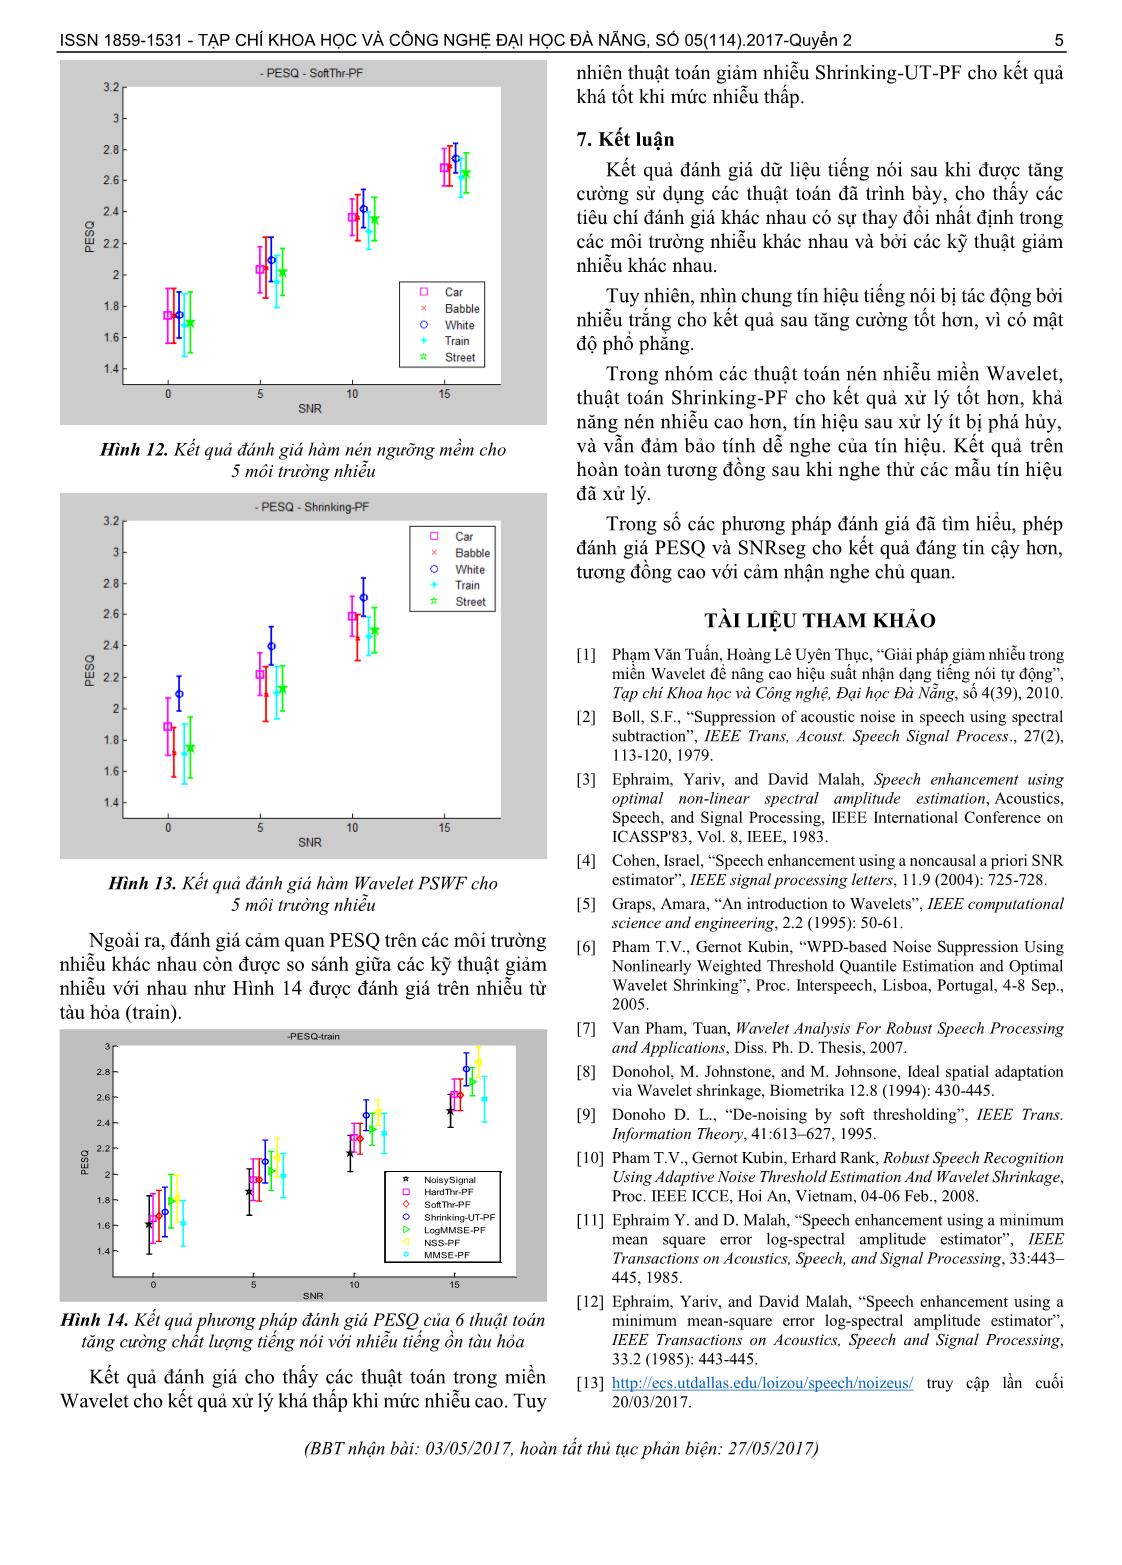 Đánh giá giải pháp giảm nhiễu cho tín hiệu tiếng nói sử dụng các phép biến đổi Wavelet trang 5